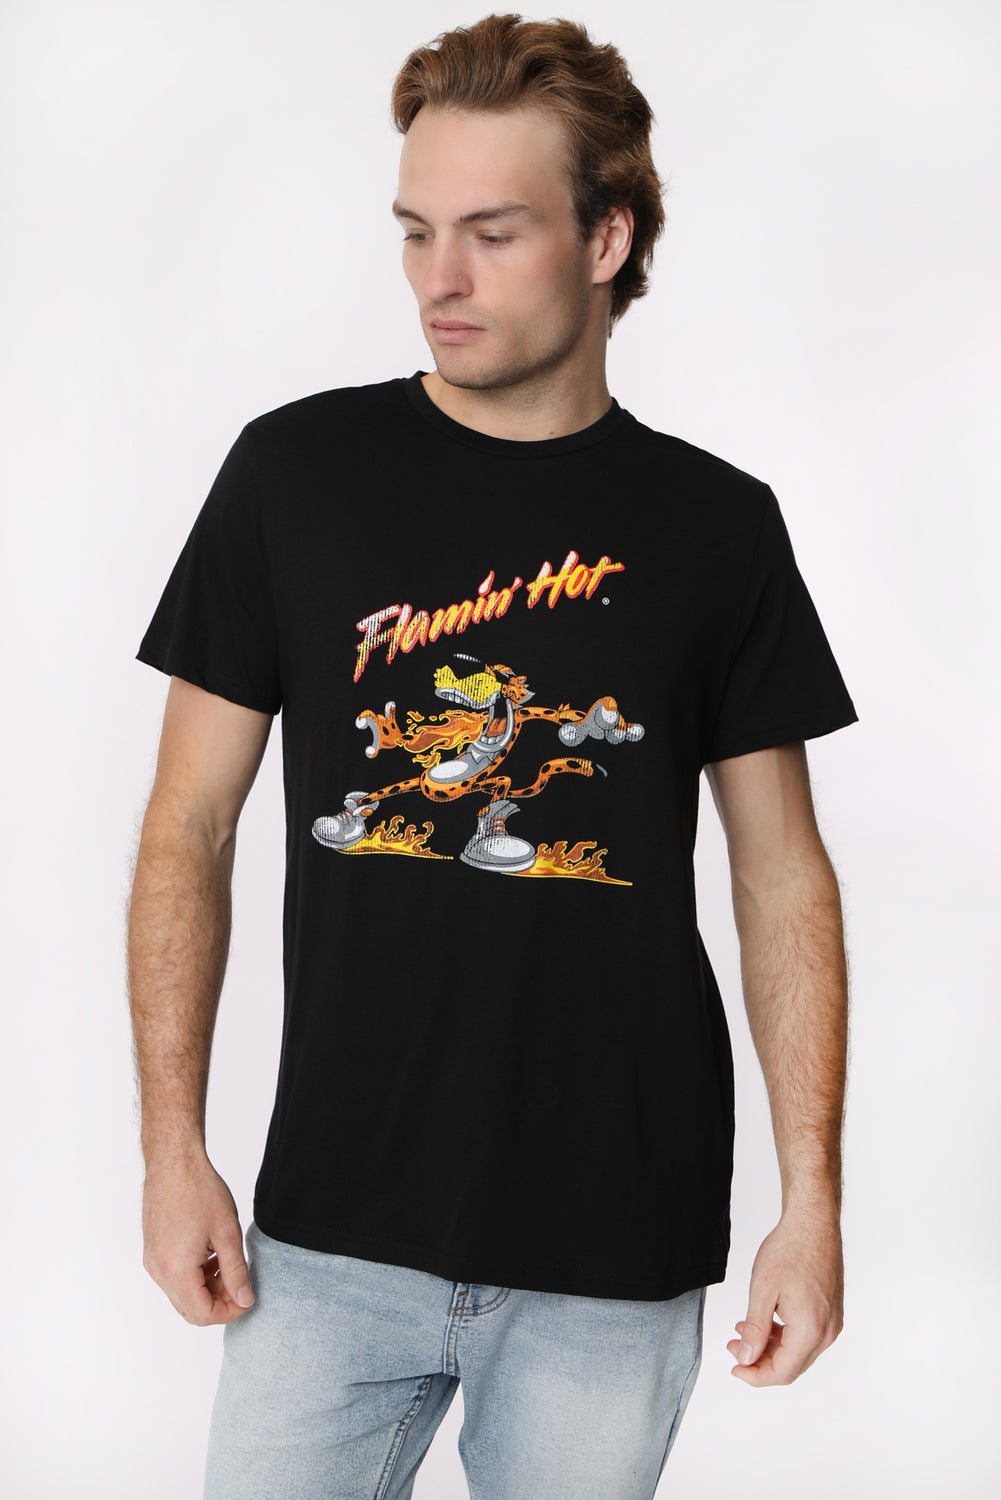 Mens Flamin' Hot Cheetos T-Shirt Mens Flamin' Hot Cheetos T-Shirt